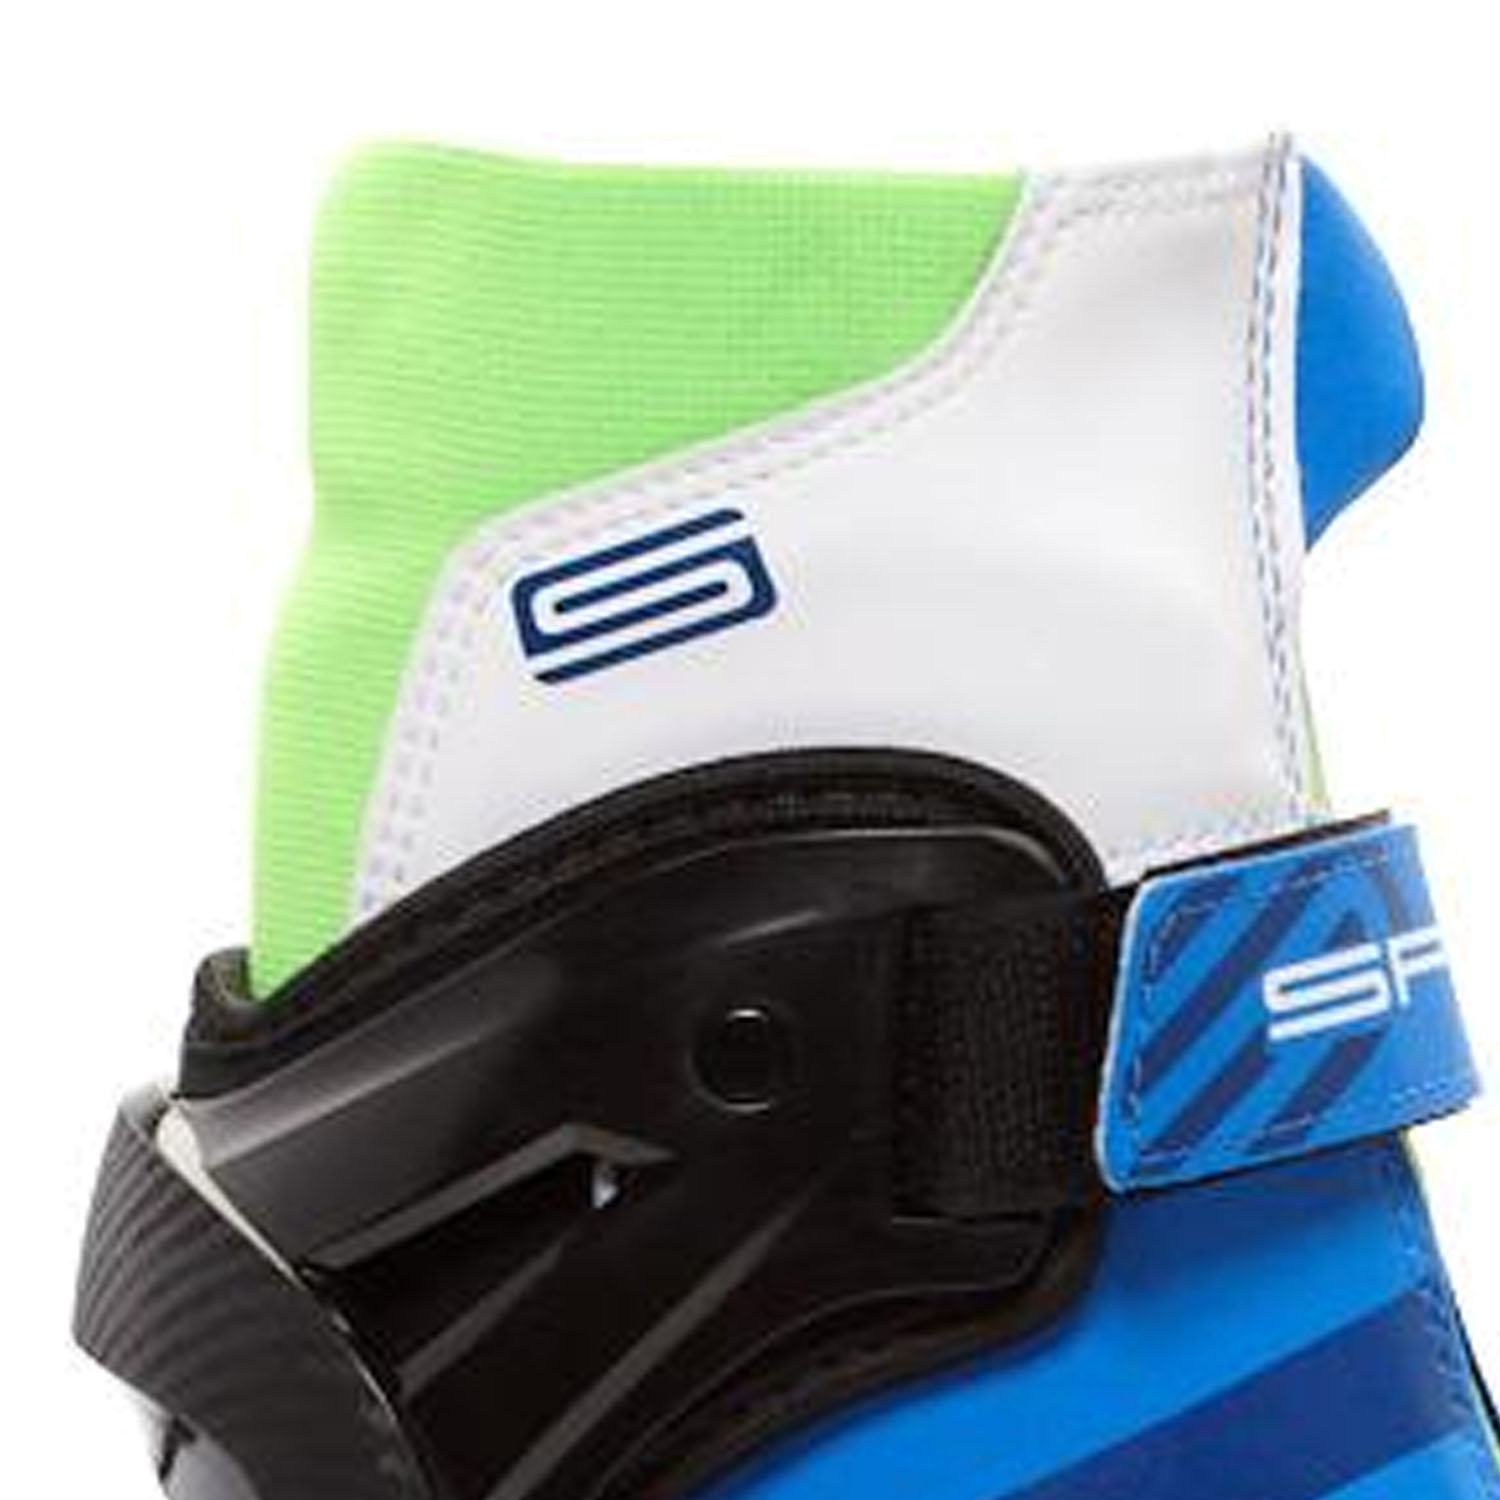 Лыжные ботинки SPINE Concept Skate Pro 297 Синий – купить по цене 11990руб, магазин «Кант»